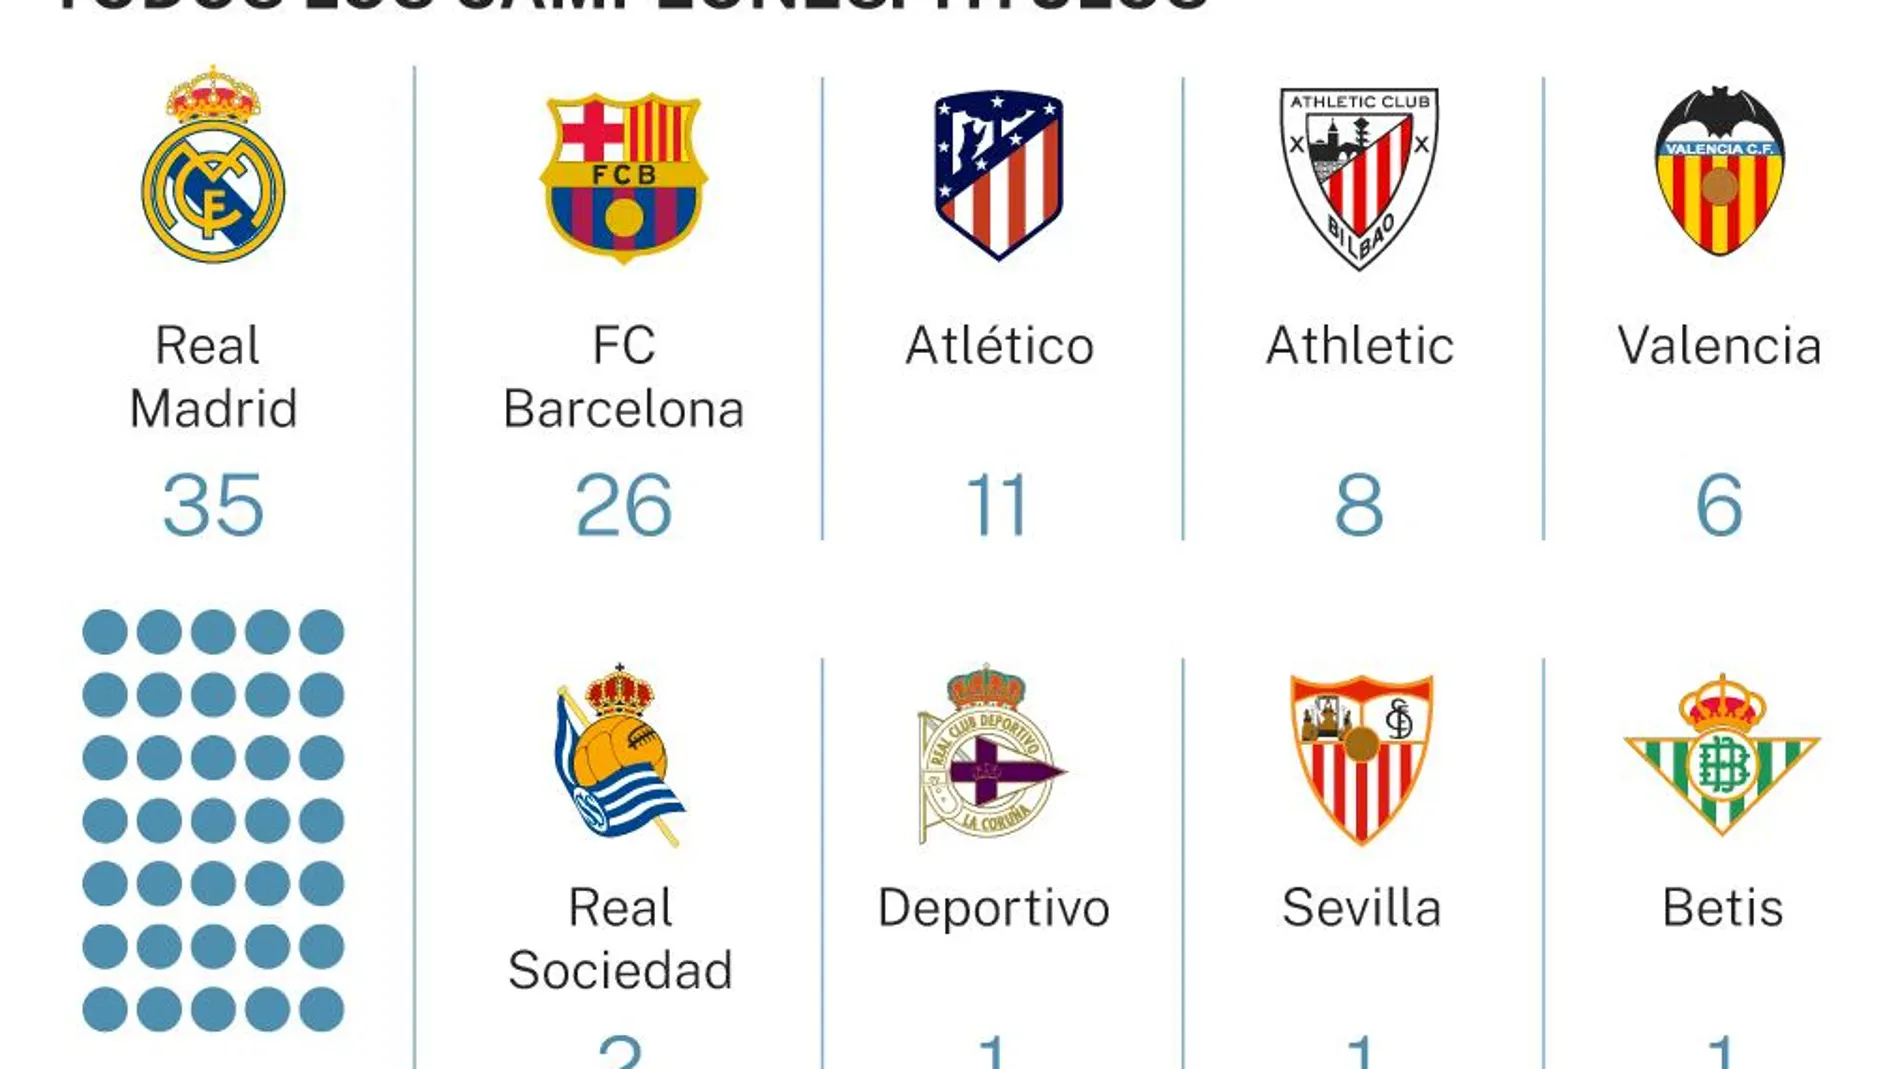 ¿Cuántas ligas de fútbol tiene el FC Barcelona